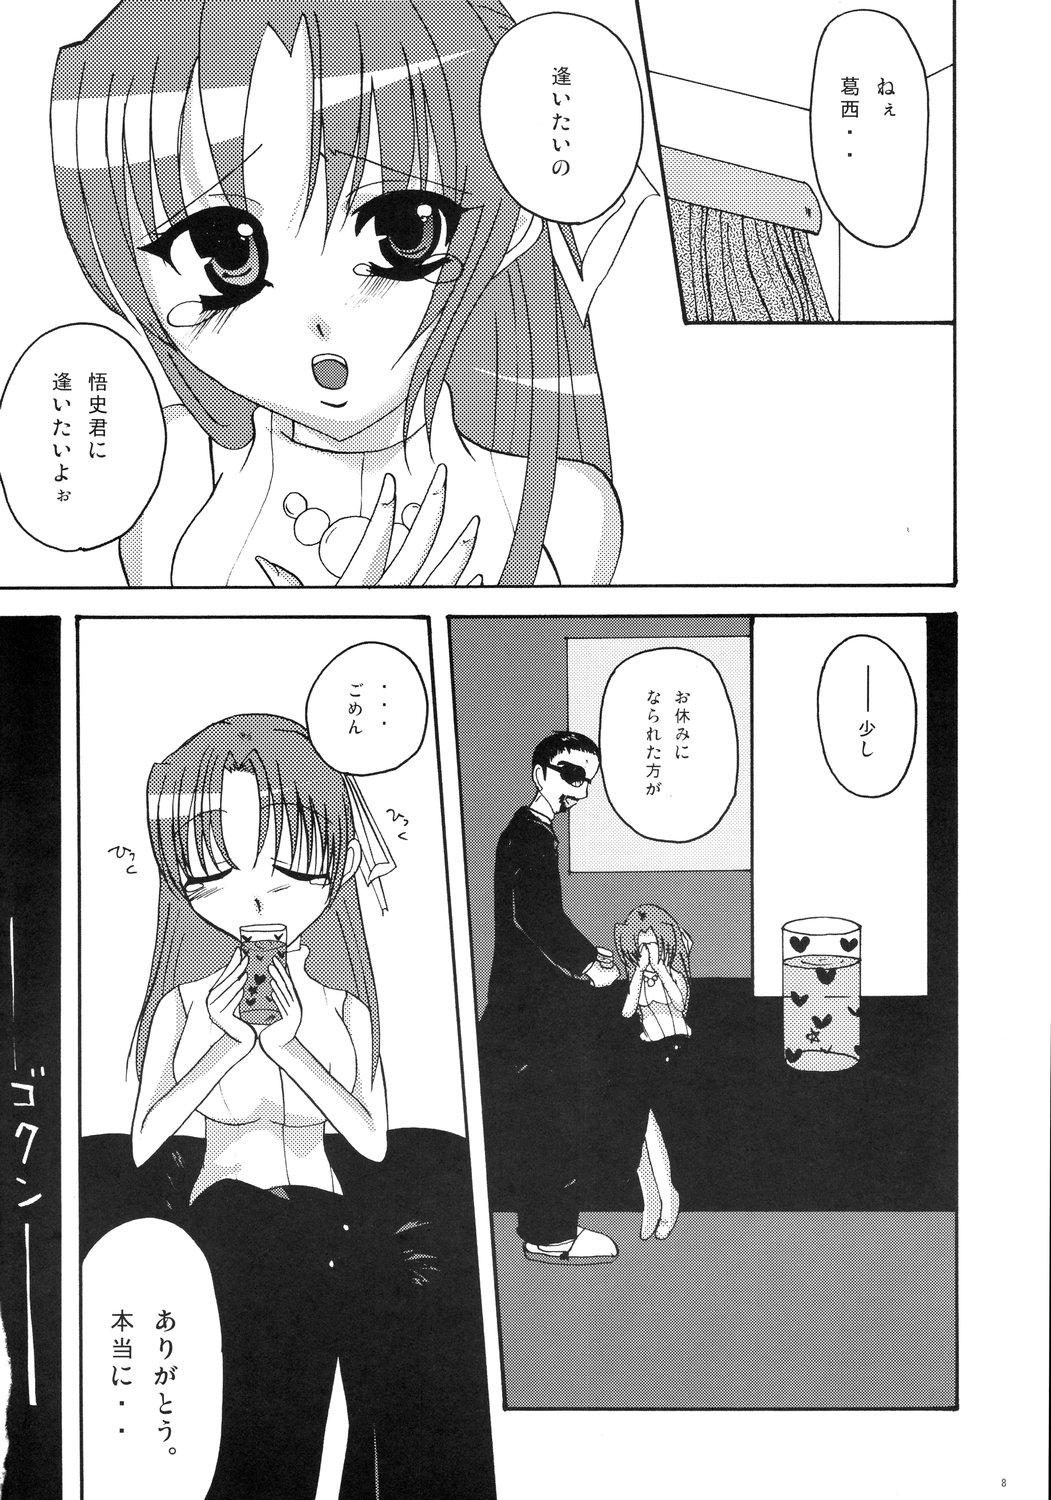 Strip Kiss Rock - Higurashi no naku koro ni Mms - Page 8